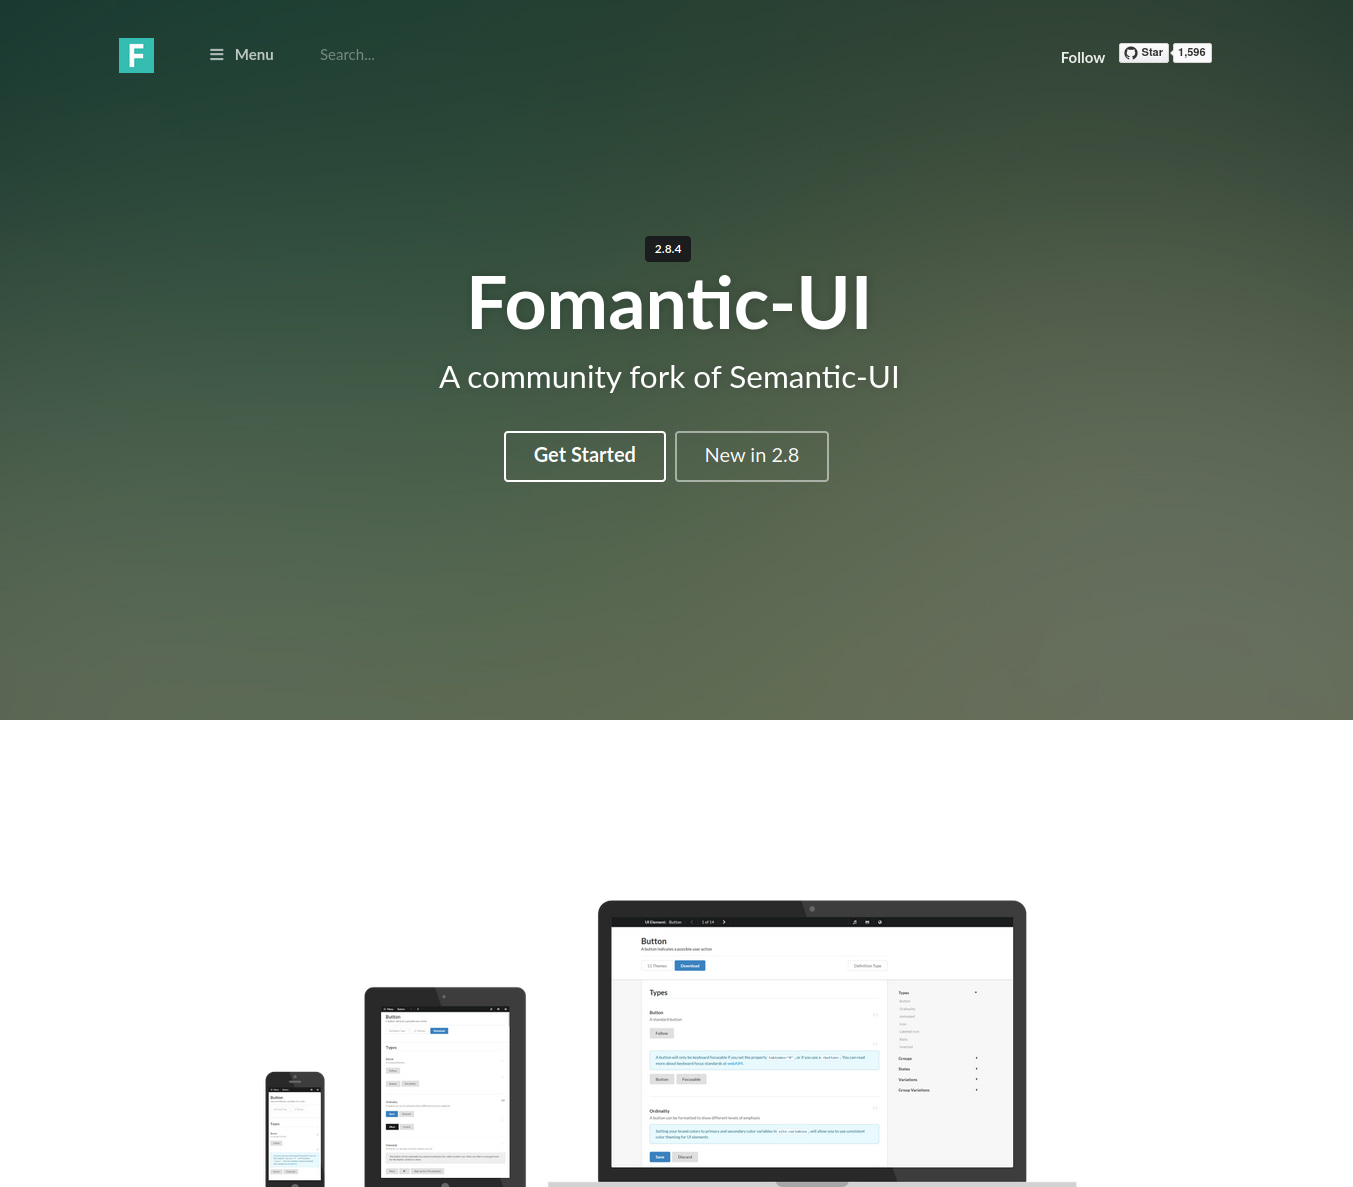 Die Webseite von Fomantic-UI ist klar angelehnt an die von Semantic-UI